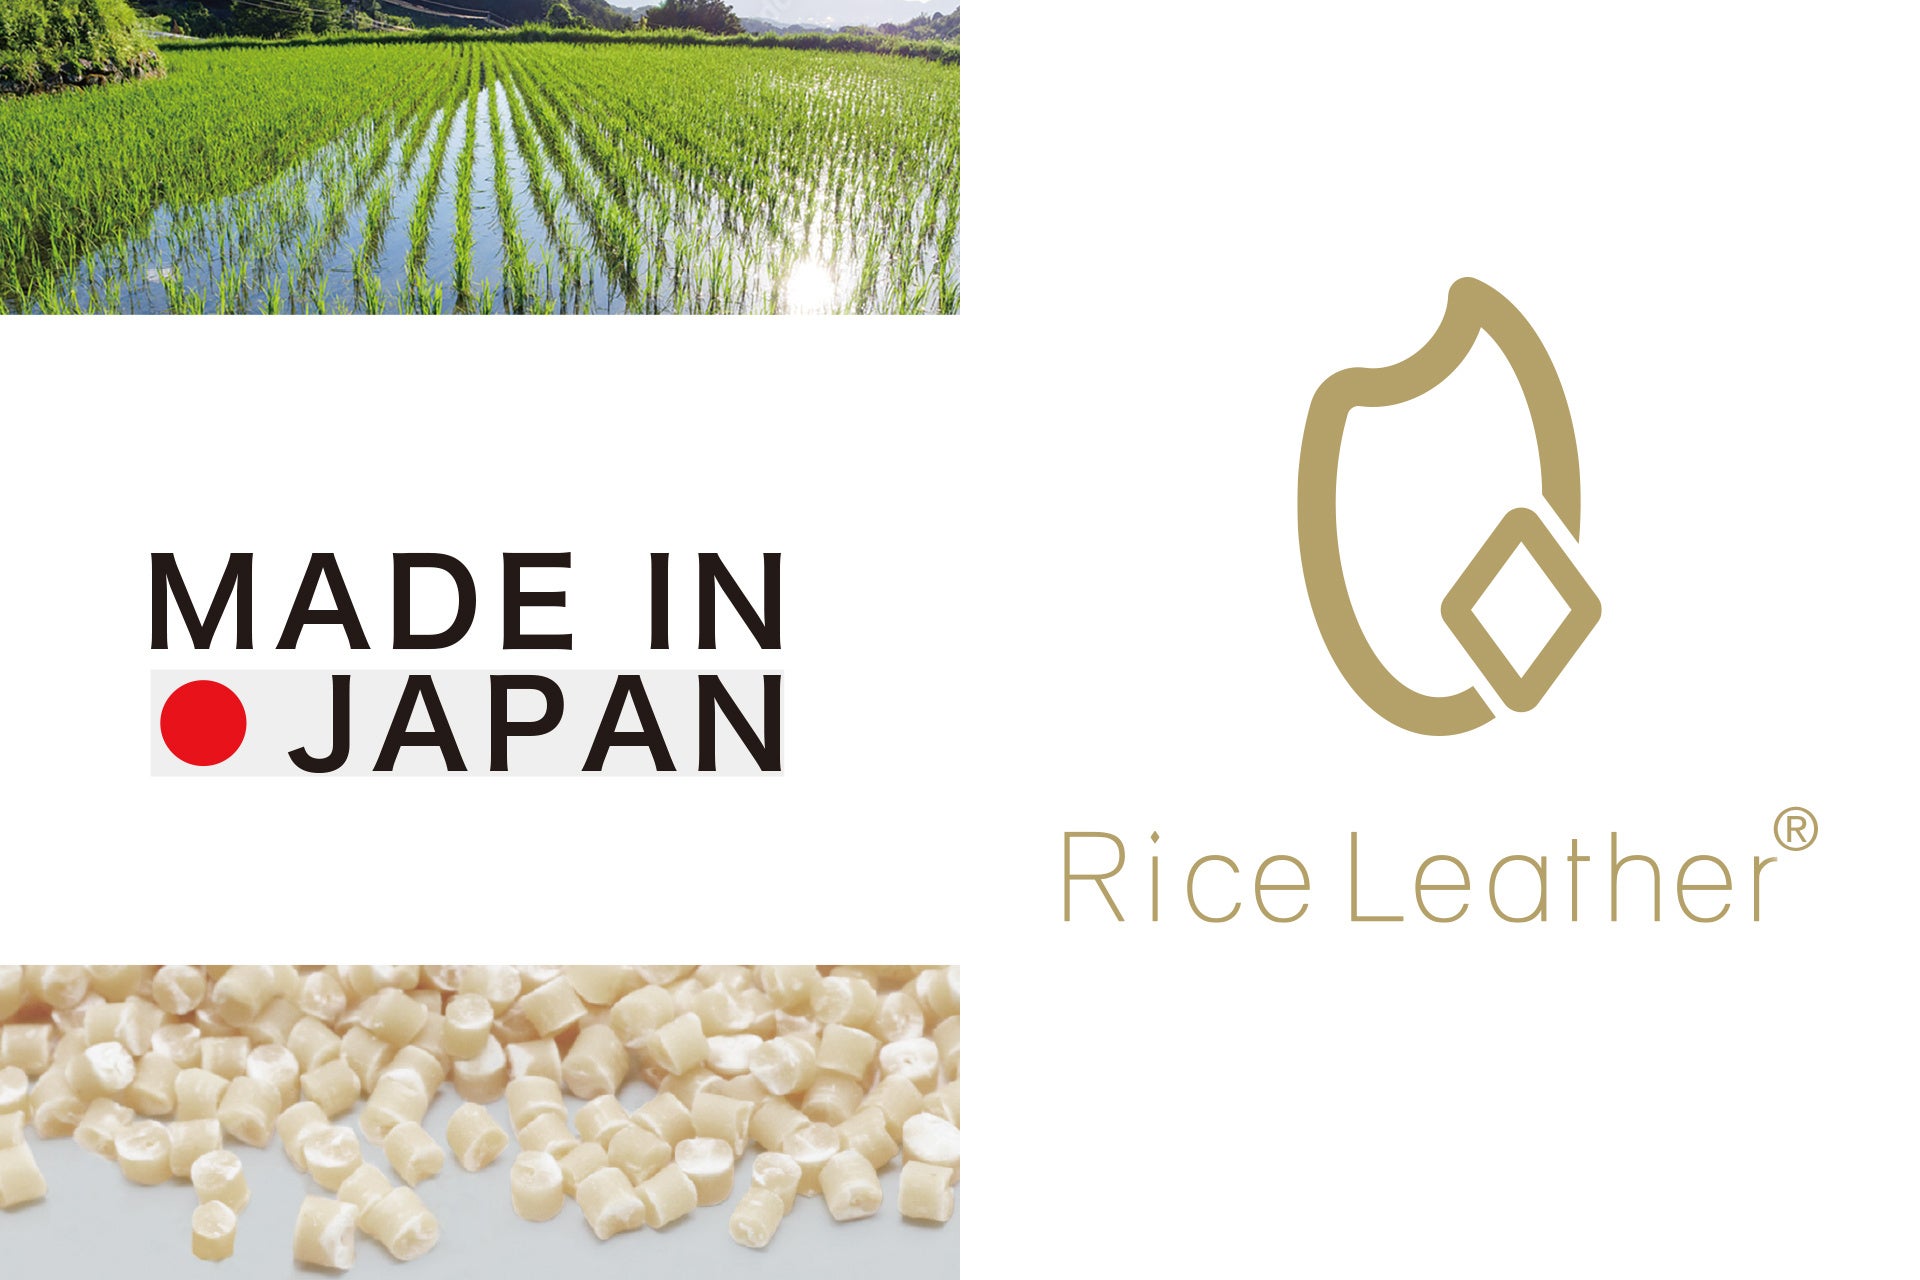 福島県産の米を含む国産ヴィーガンレザー「Rice Leather™」を使用した世界初のアパレル商品を開発！福島美少女図鑑、MA3.0、コバオリ株式会社による共同プロジェクト始動のサブ画像3